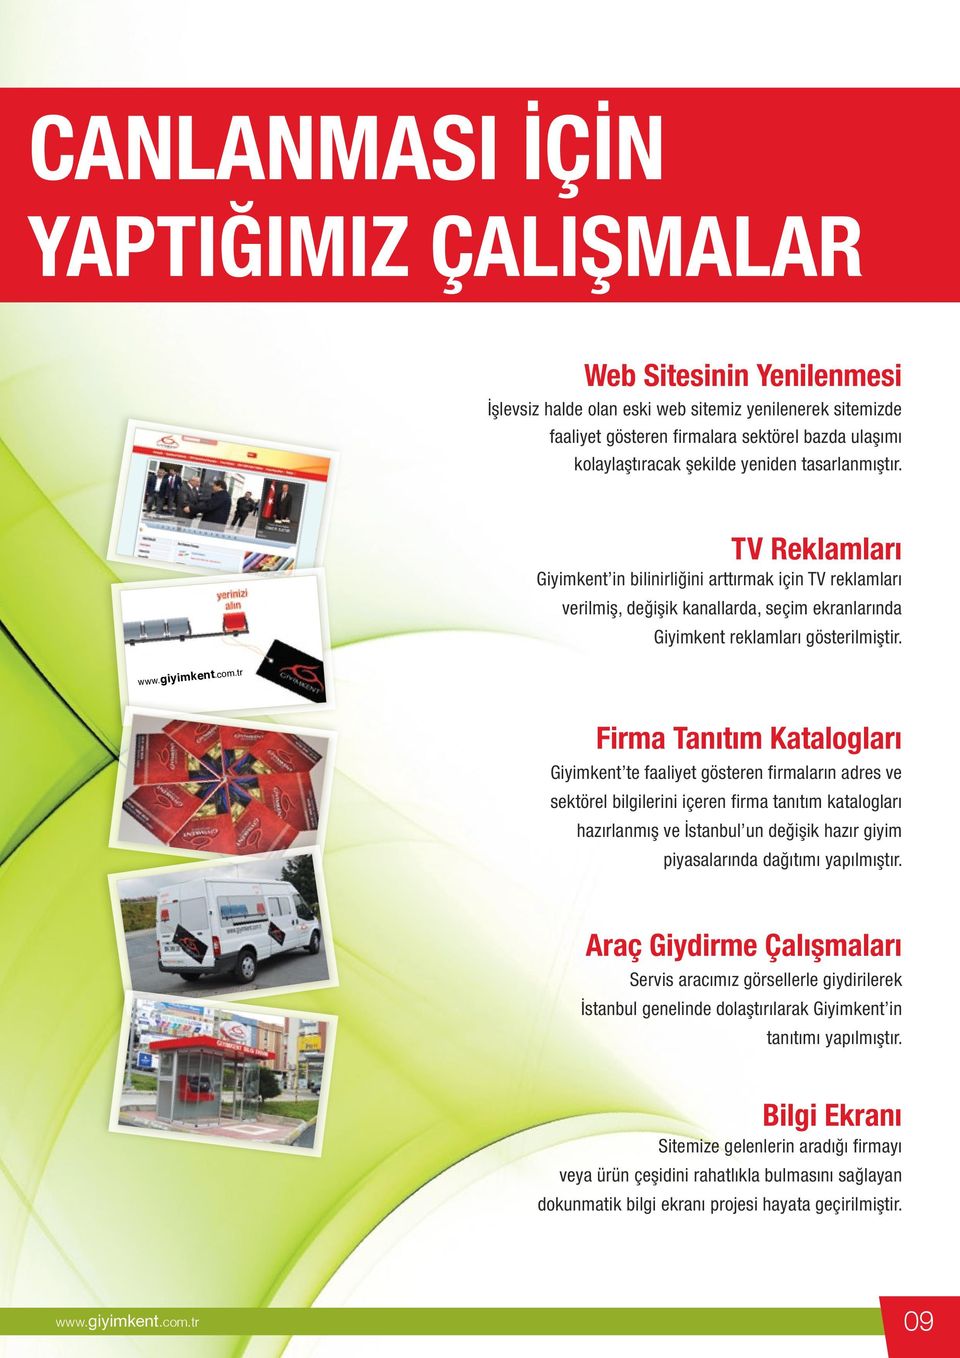 Firma Tanıtım Katalogları Giyimkent te faaliyet gösteren firmaların adres ve sektörel bilgilerini içeren firma tanıtım katalogları hazırlanmış ve İstanbul un değişik hazır giyim piyasalarında